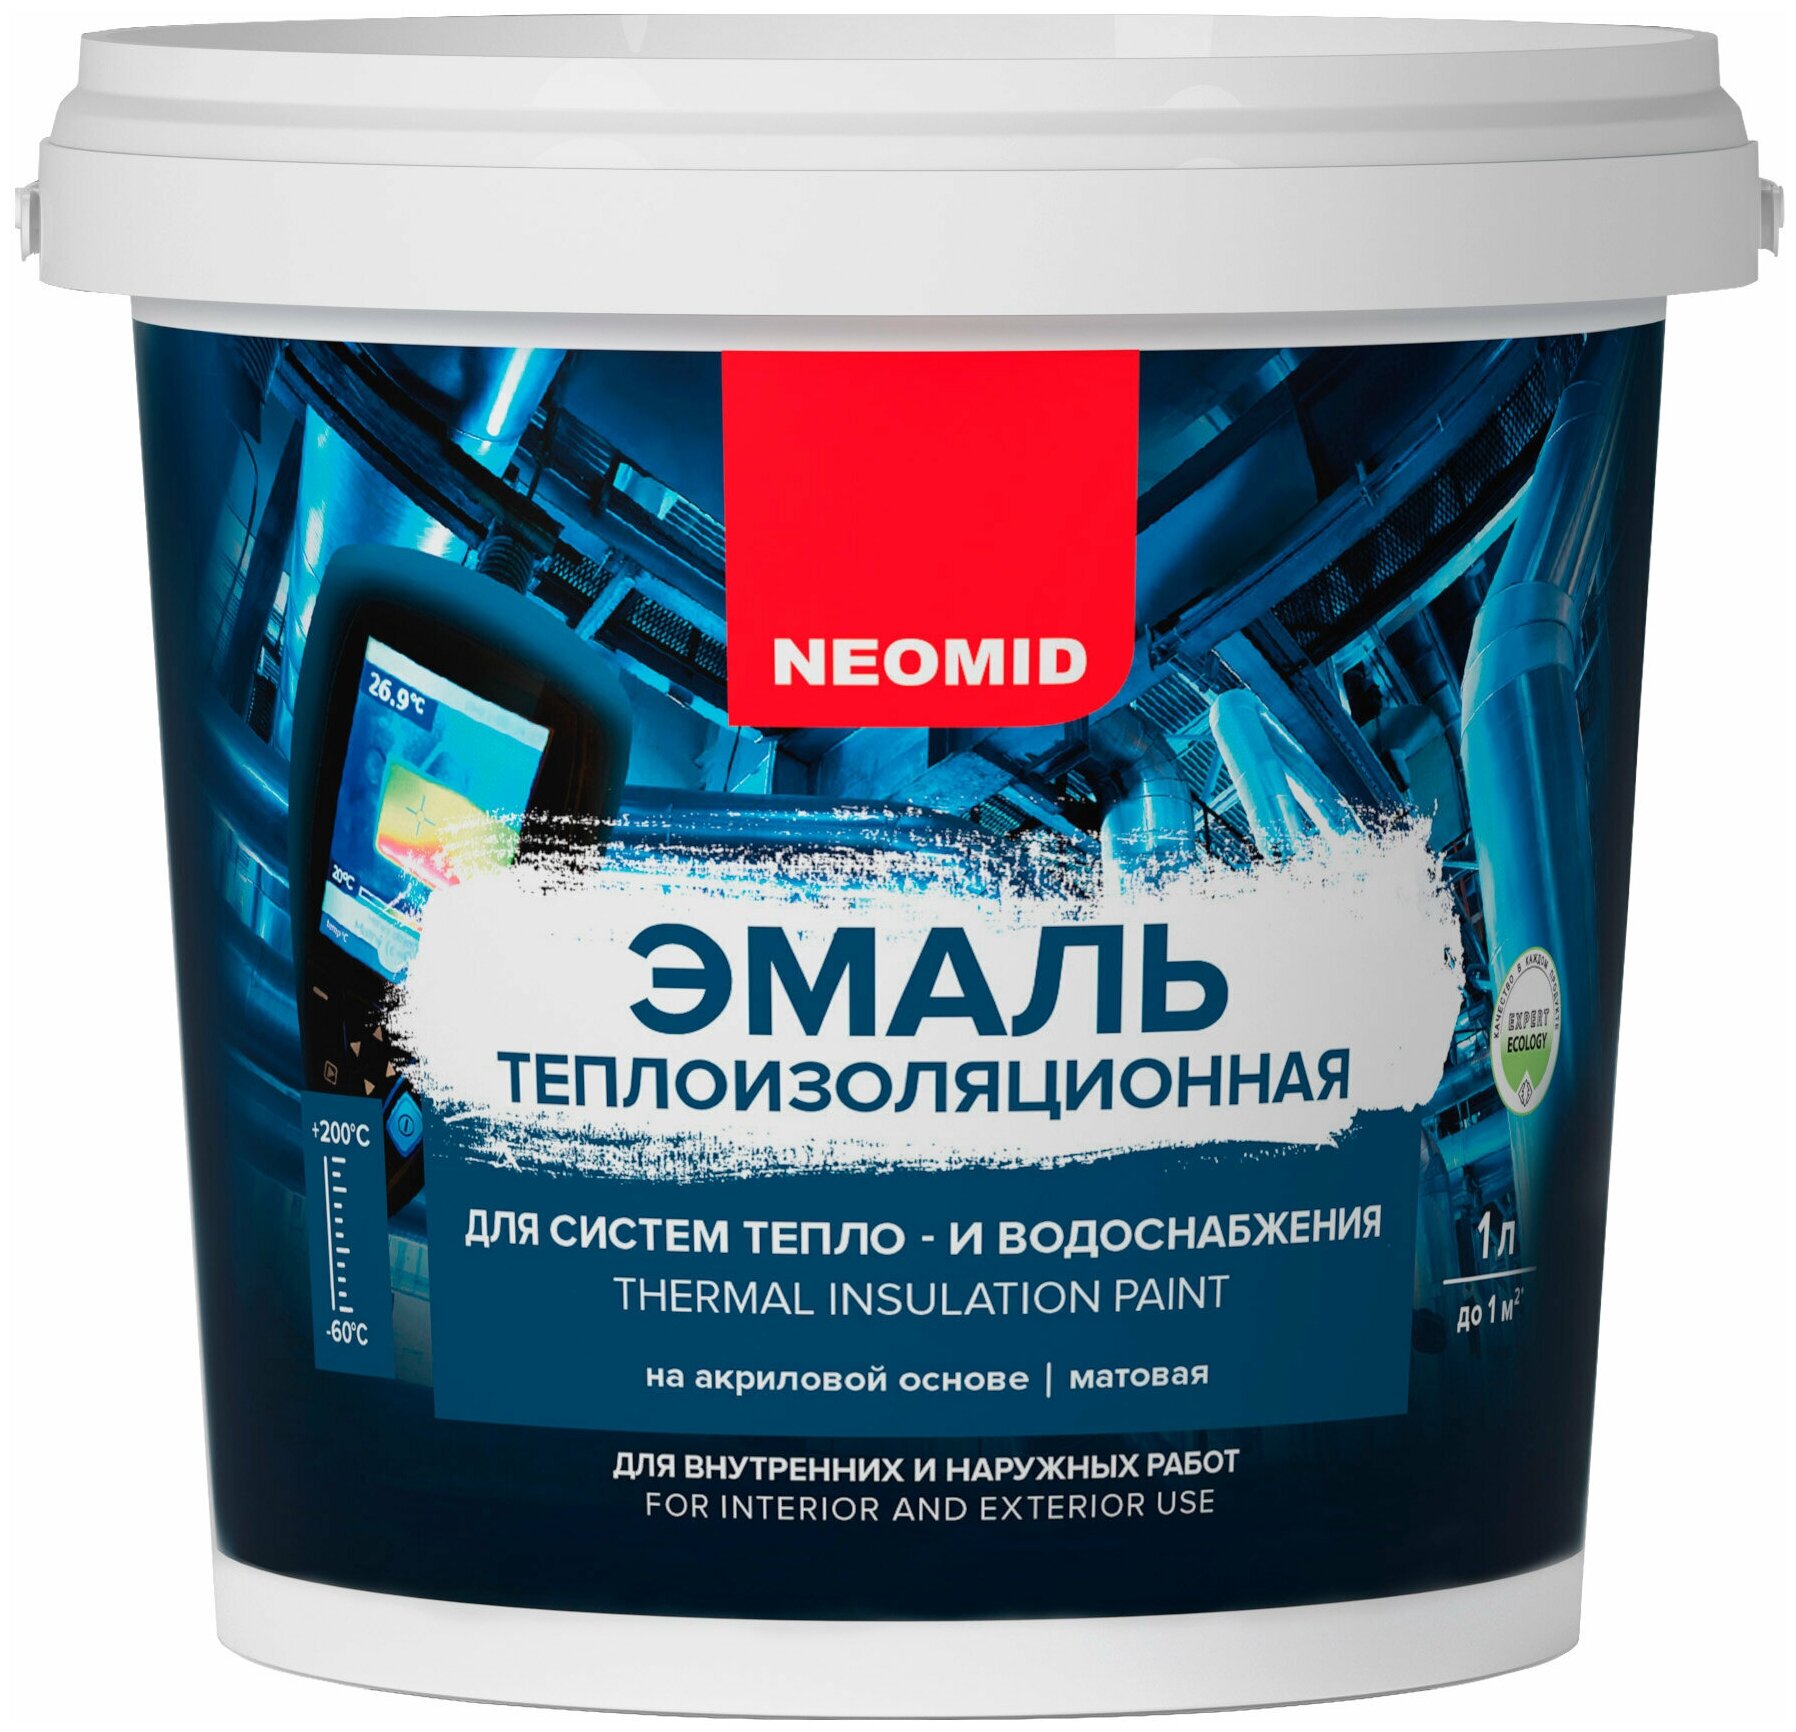 Neomid Эмаль теплоизоляционная (1 л.)